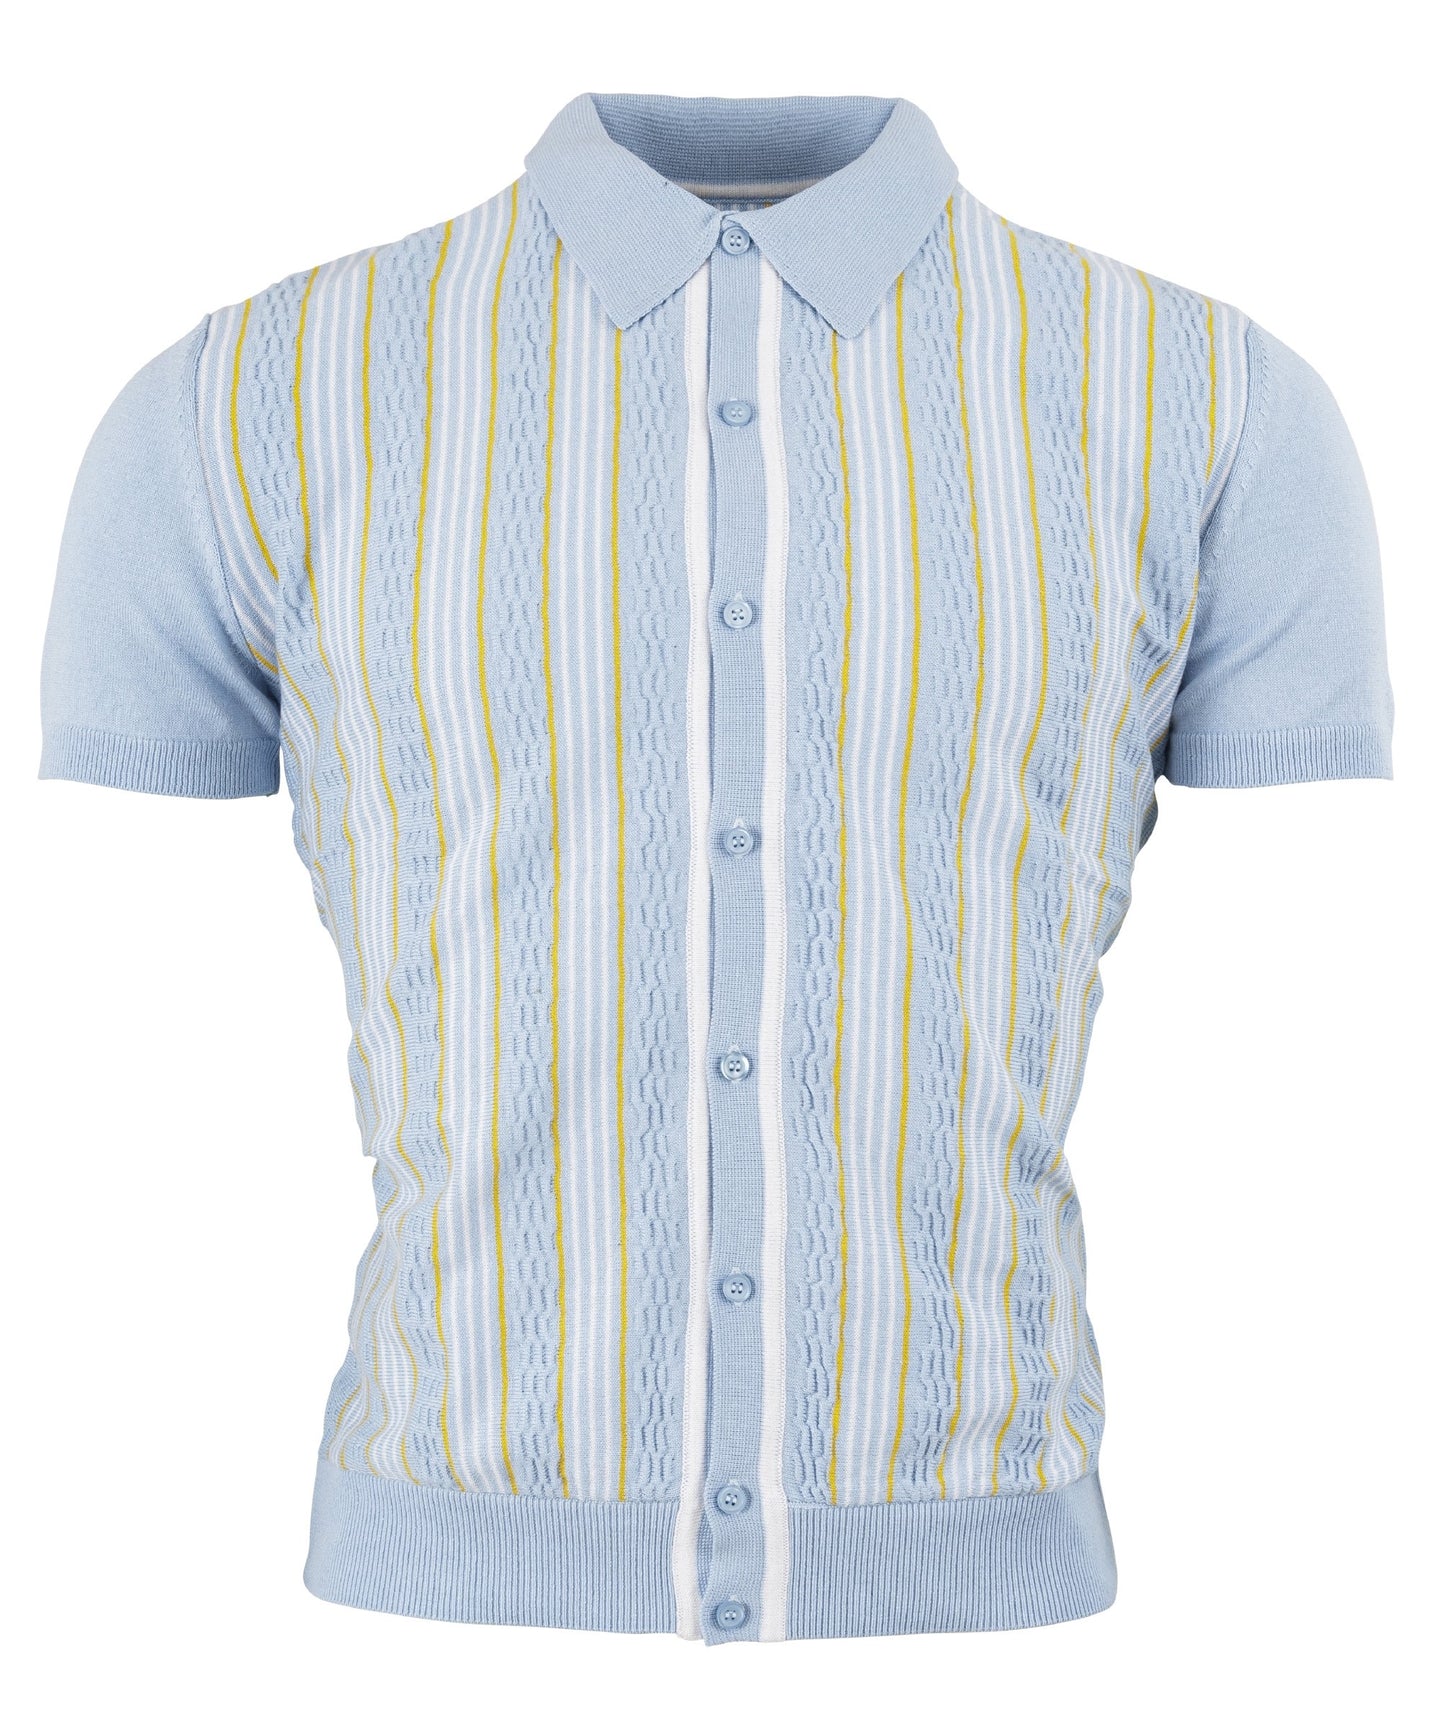 Relco cardigan polo tricoté à rayures texturées rétro bleu ciel pour homme